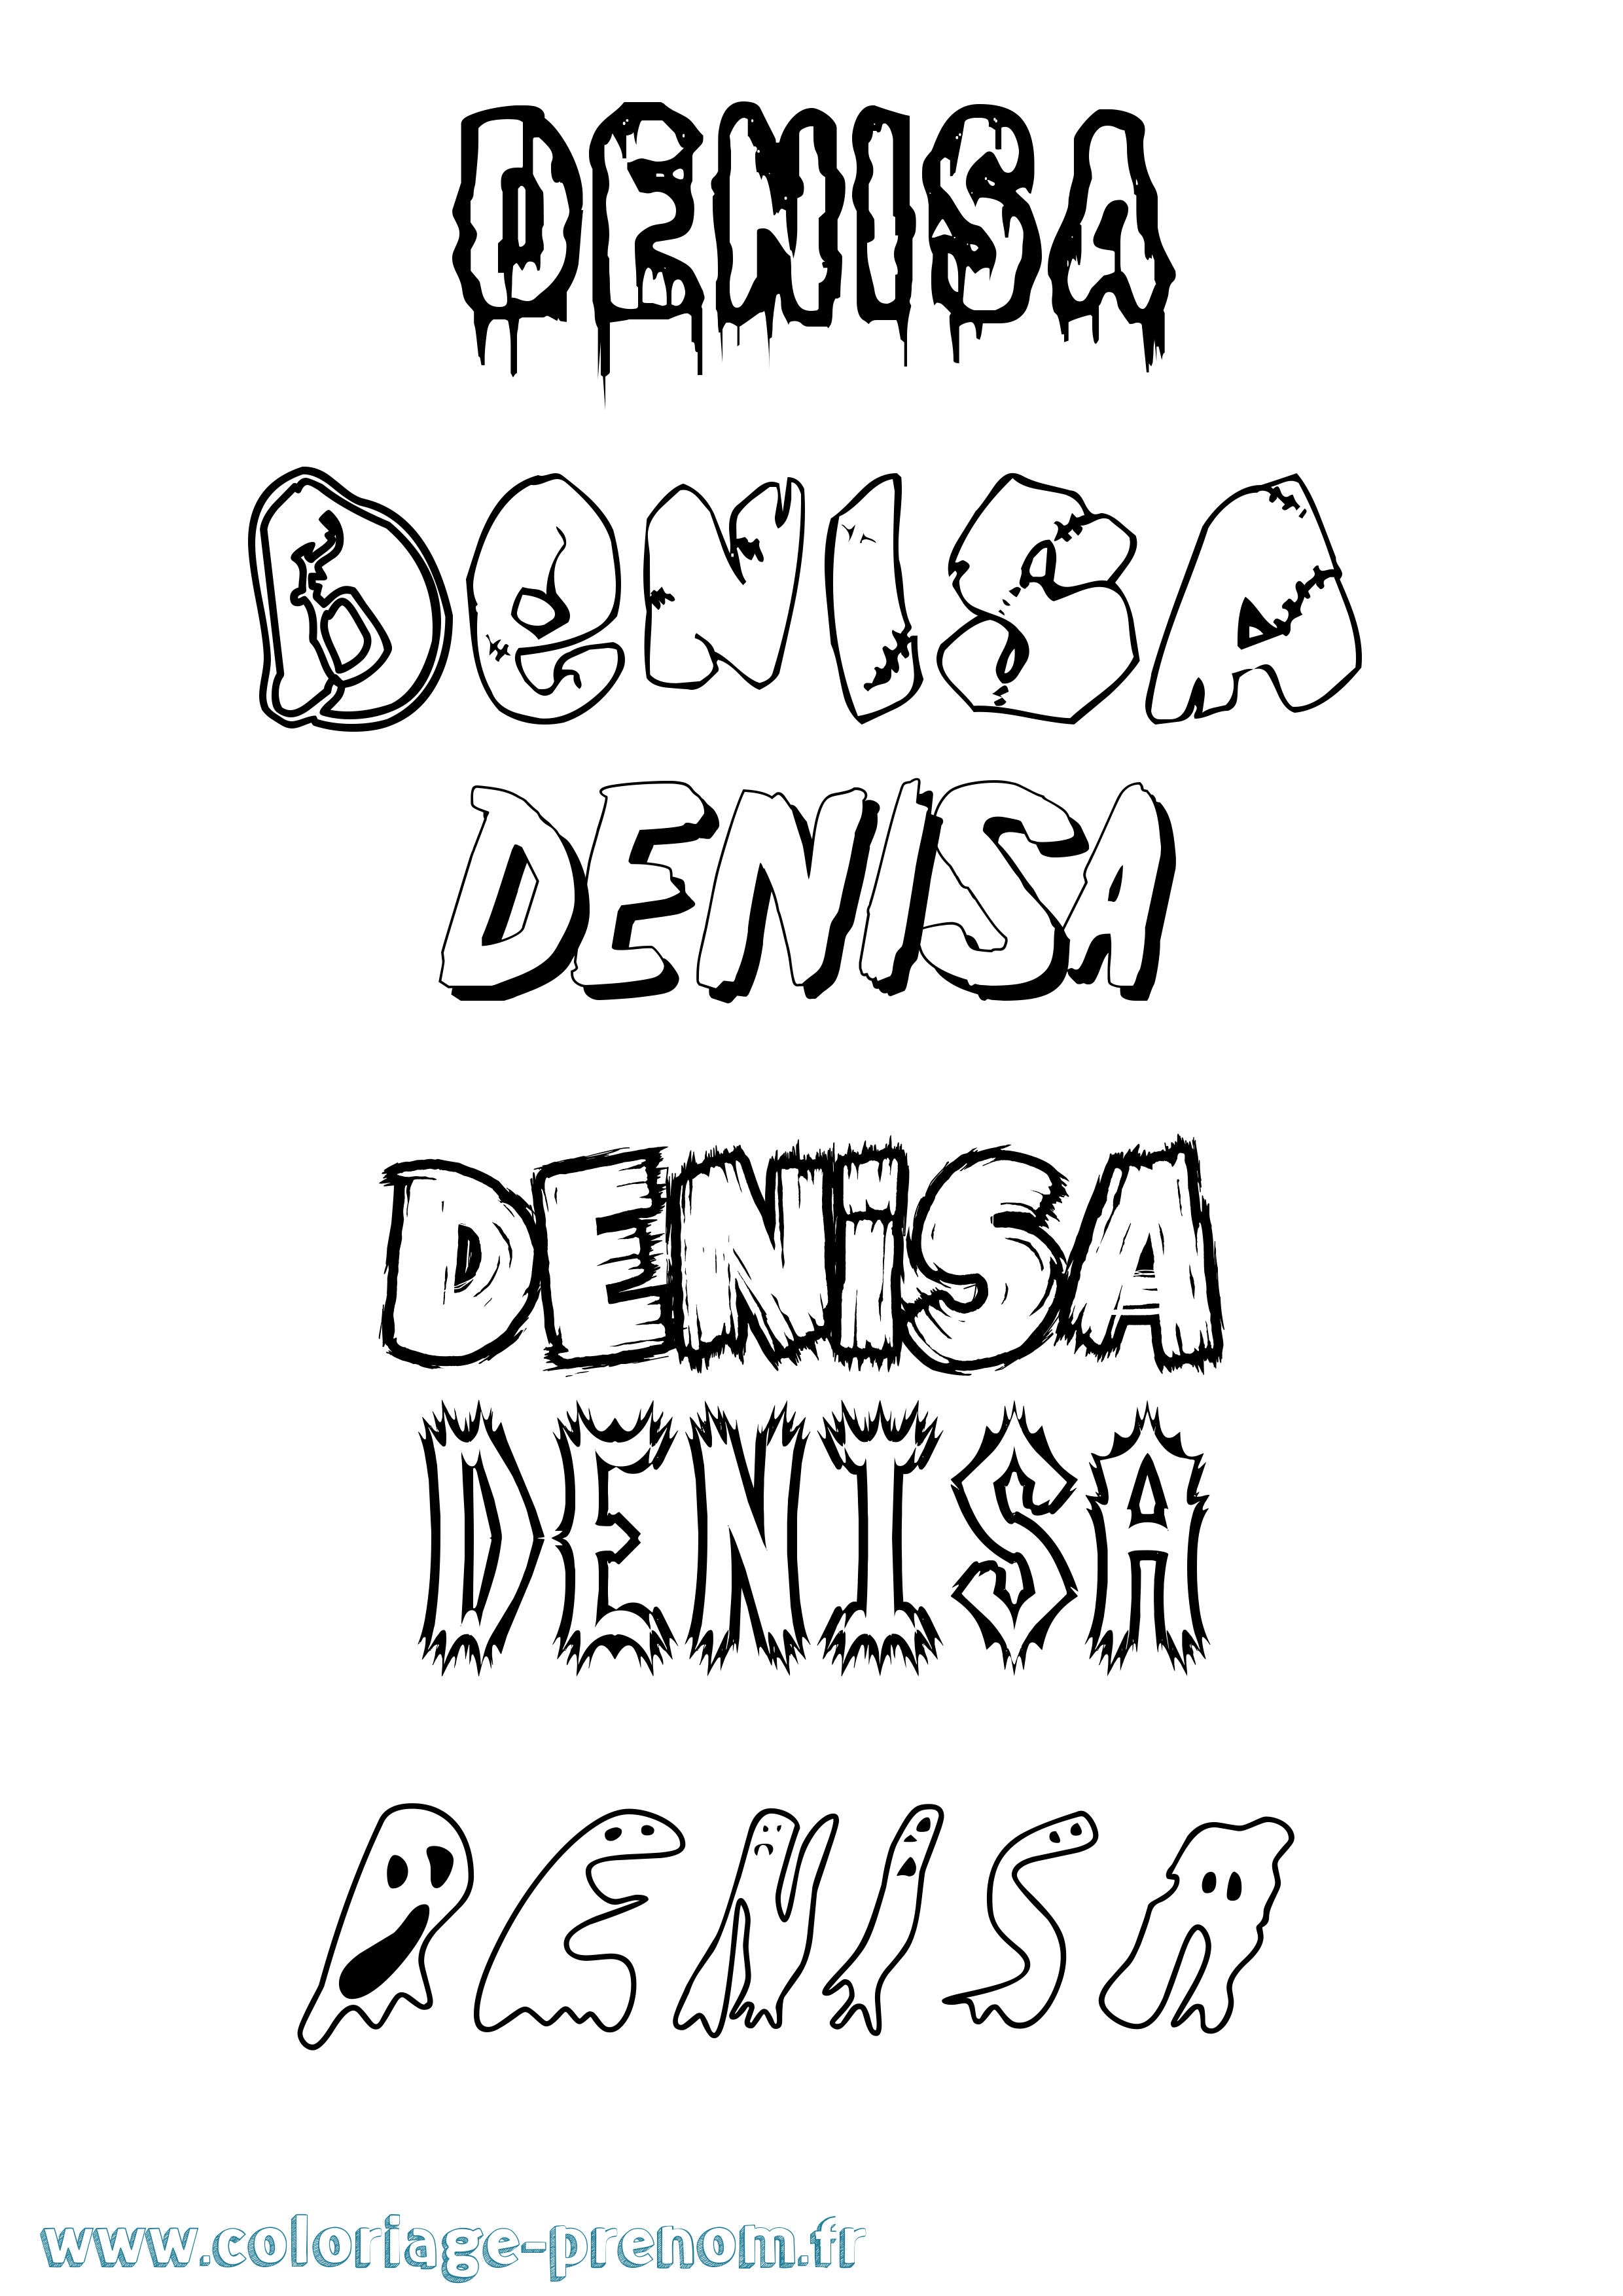 Coloriage prénom Denisa Frisson